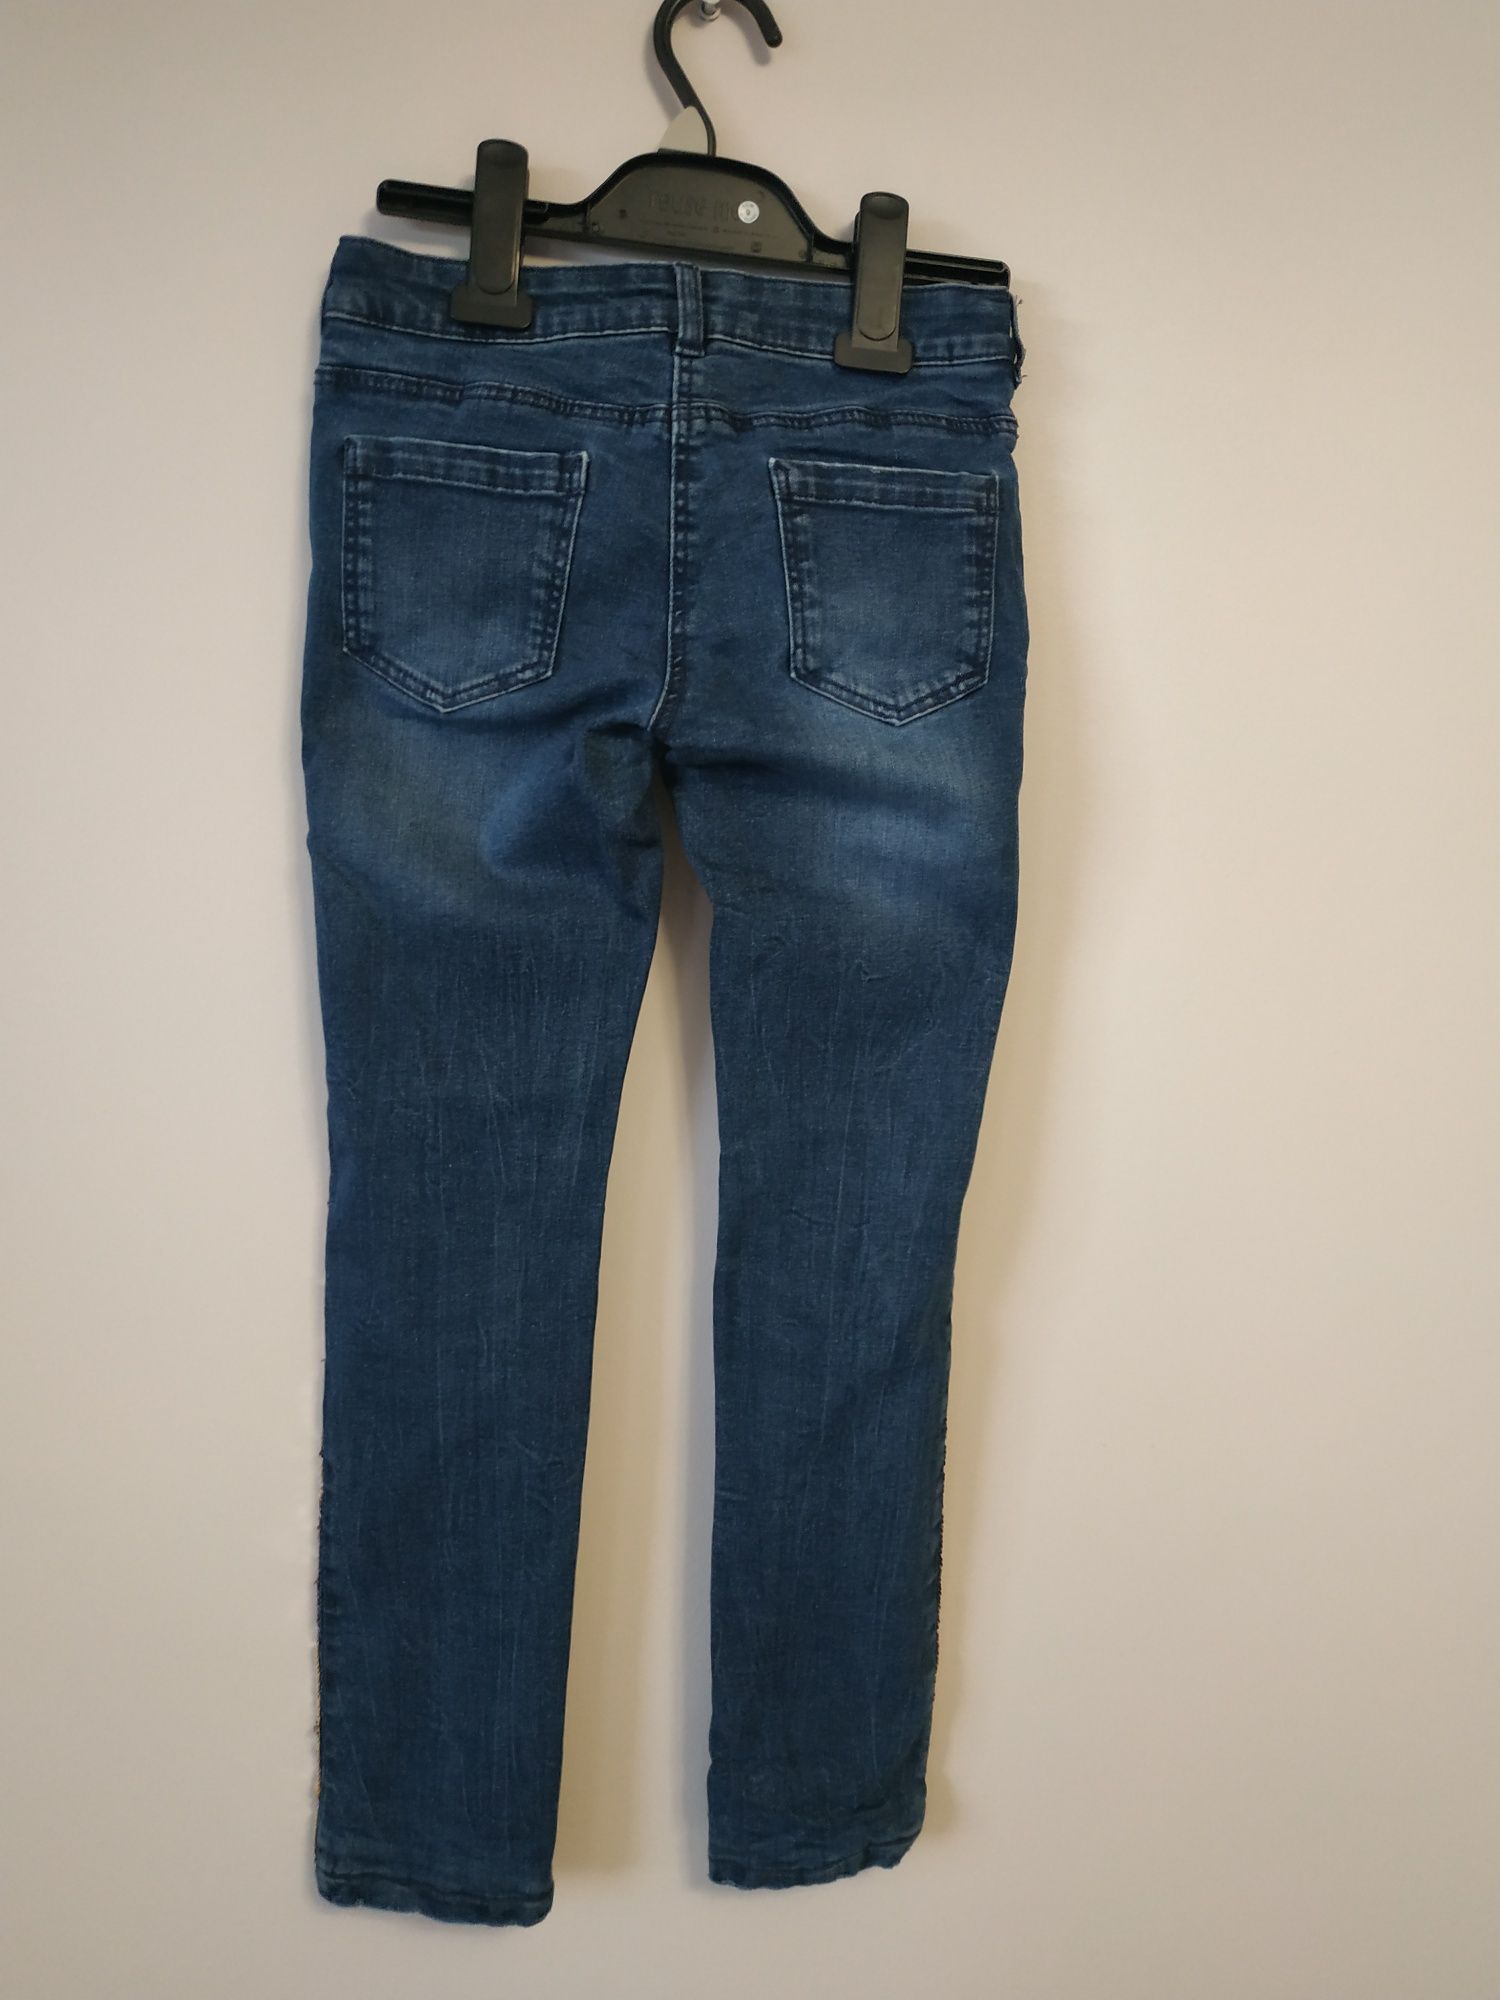 Skinny jeans- ocieplane dżinsy r.128